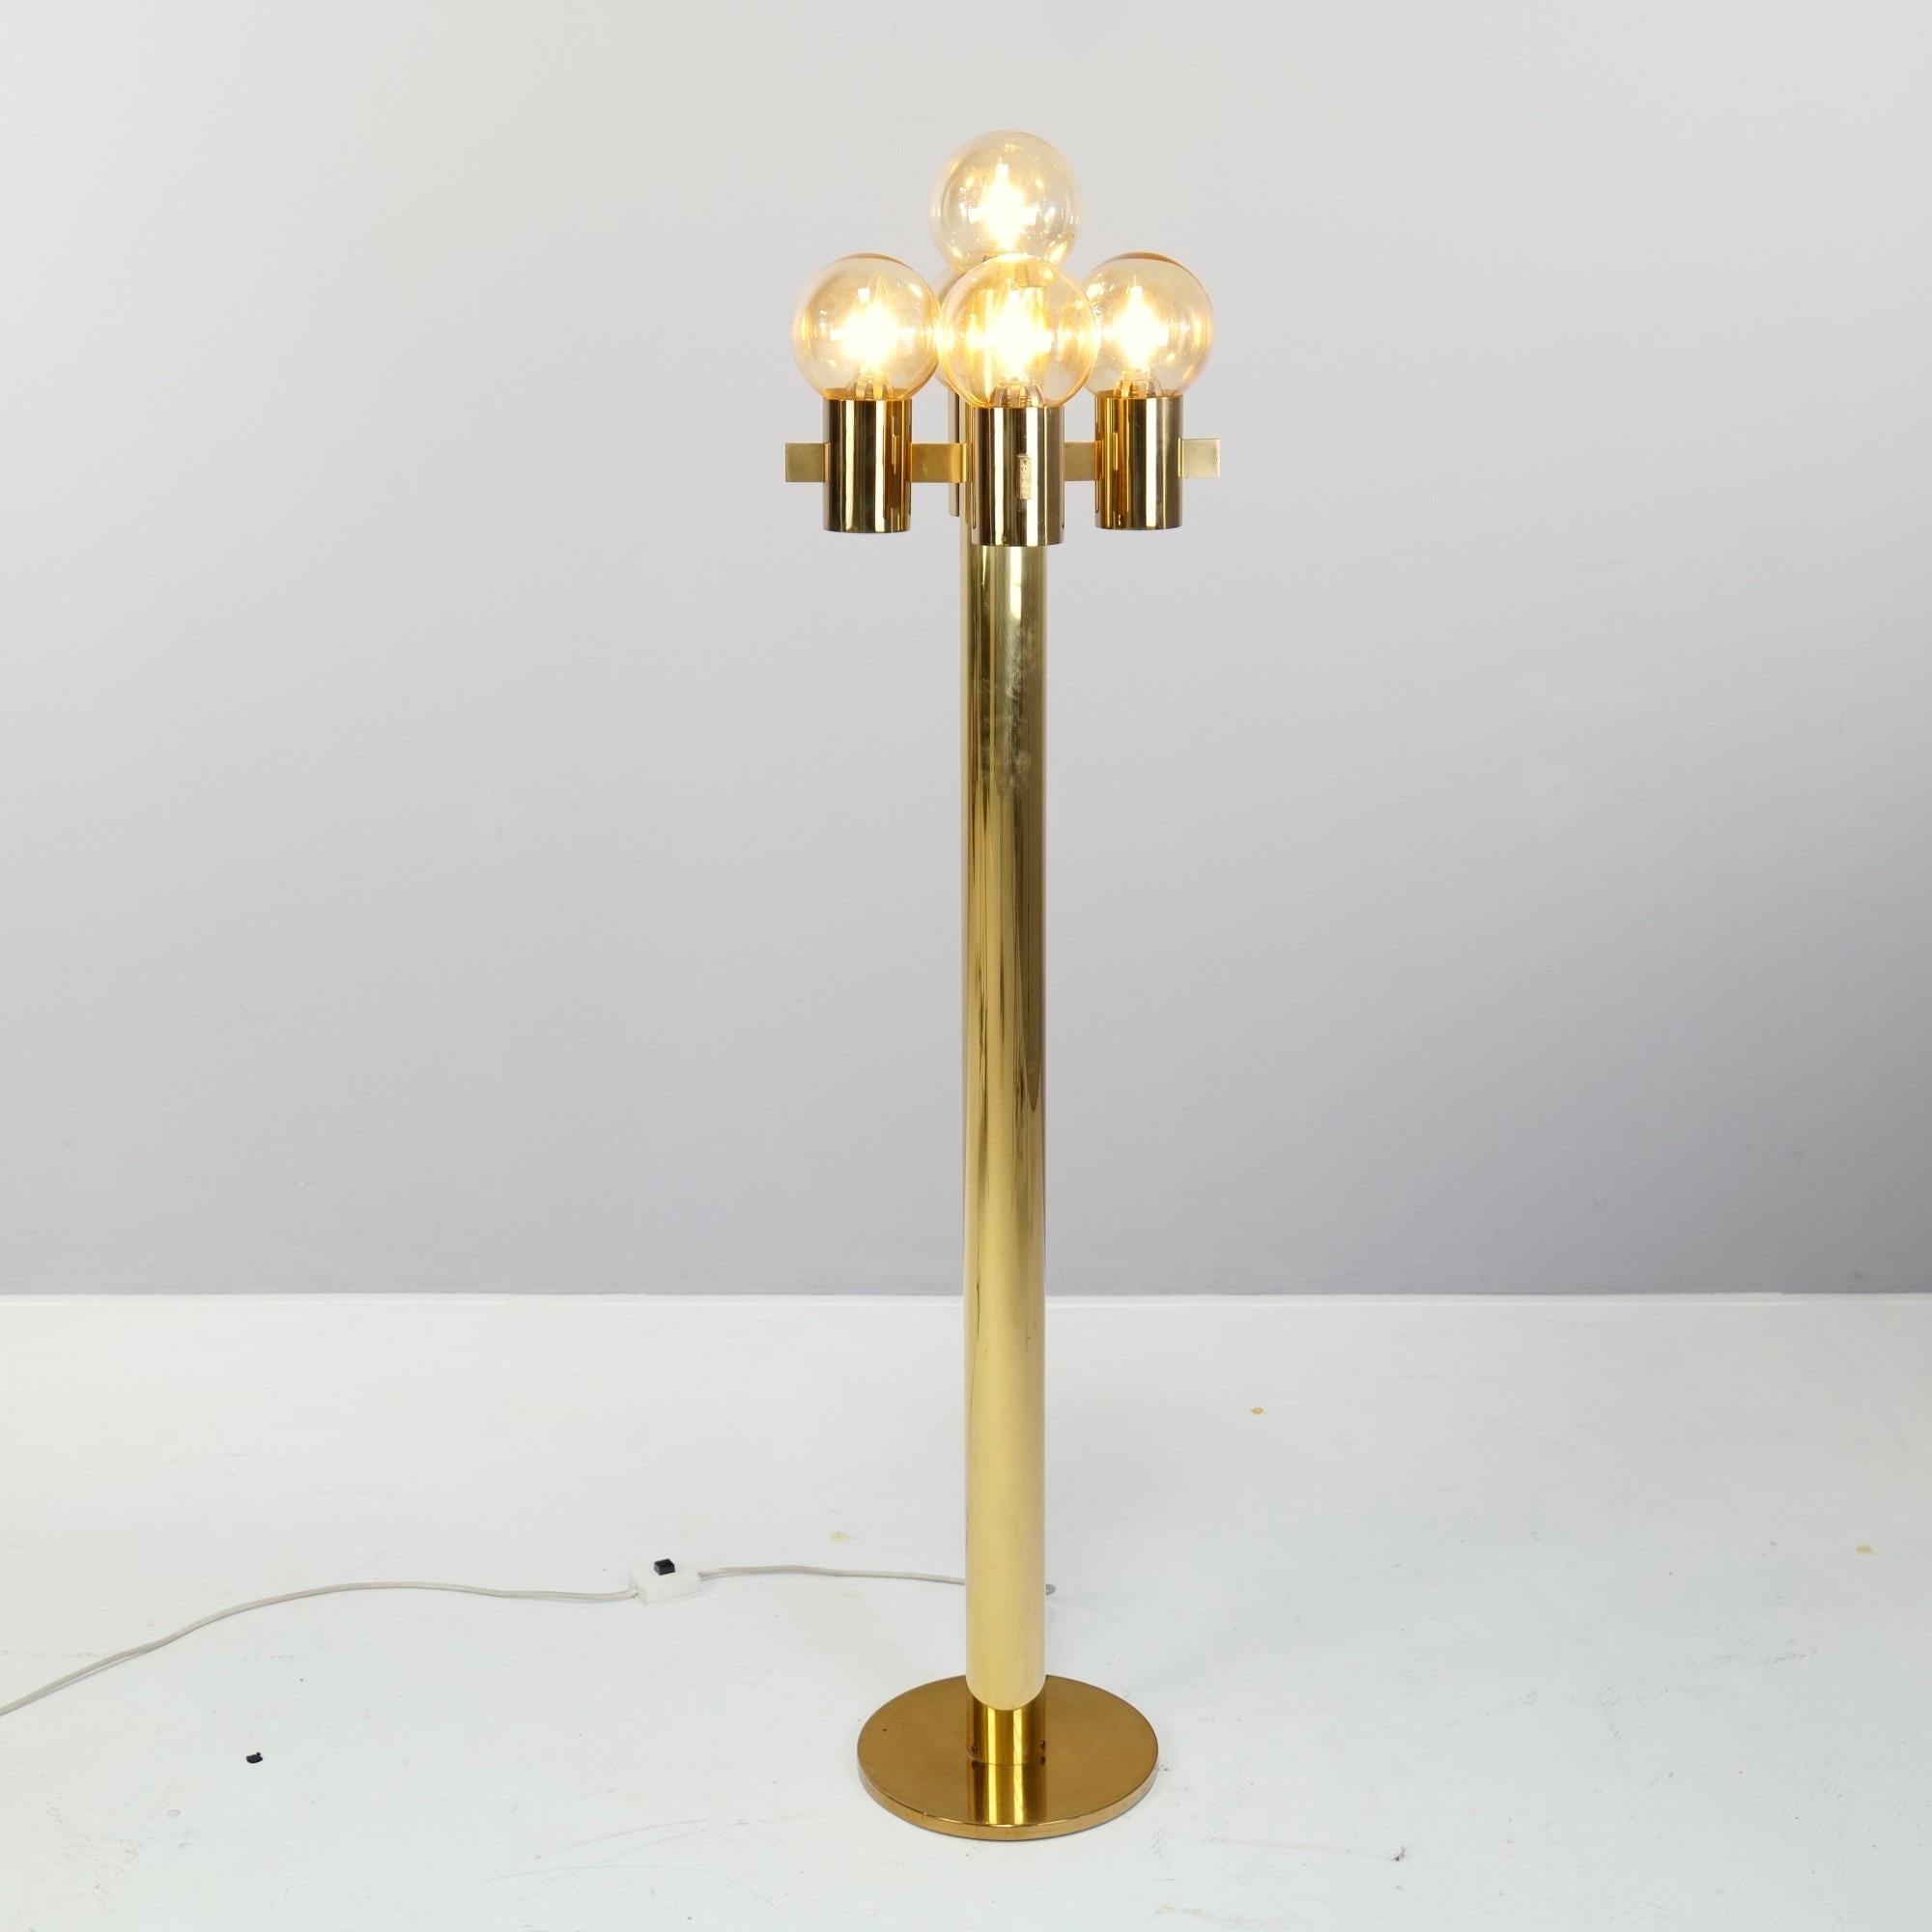 Wunderschöne goldene Stehlampe von Gaetano Sciolari mit 5 Muranoglaskolben.

Sehr guter Zustand mit leichten Patina- und Gebrauchsspuren.

1970er Jahre Hergestellt in Italien

abmessungen:
139 cm Höhe
33 cm Breite
33 cm